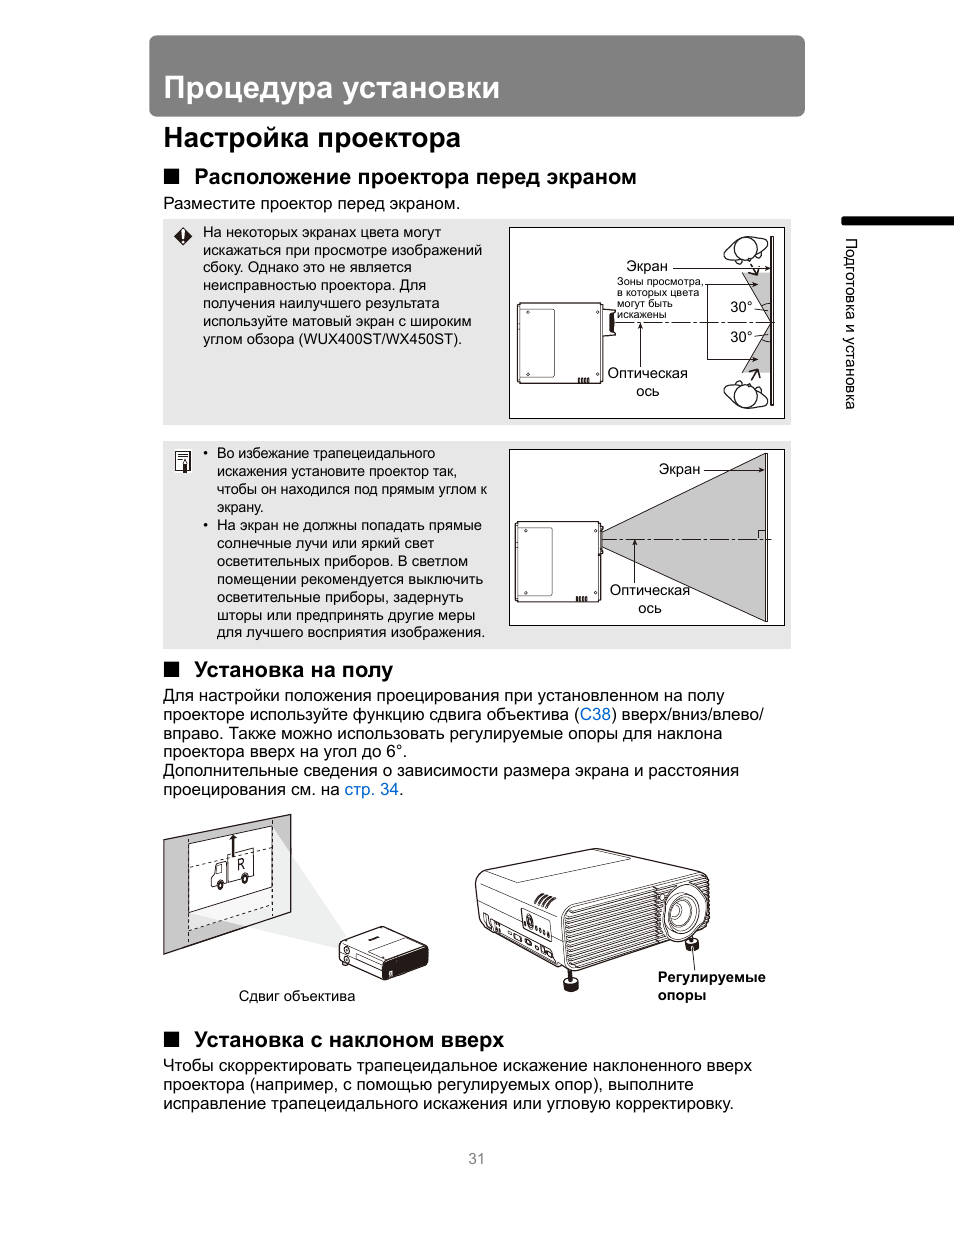 Правила установки проекционного оборудования